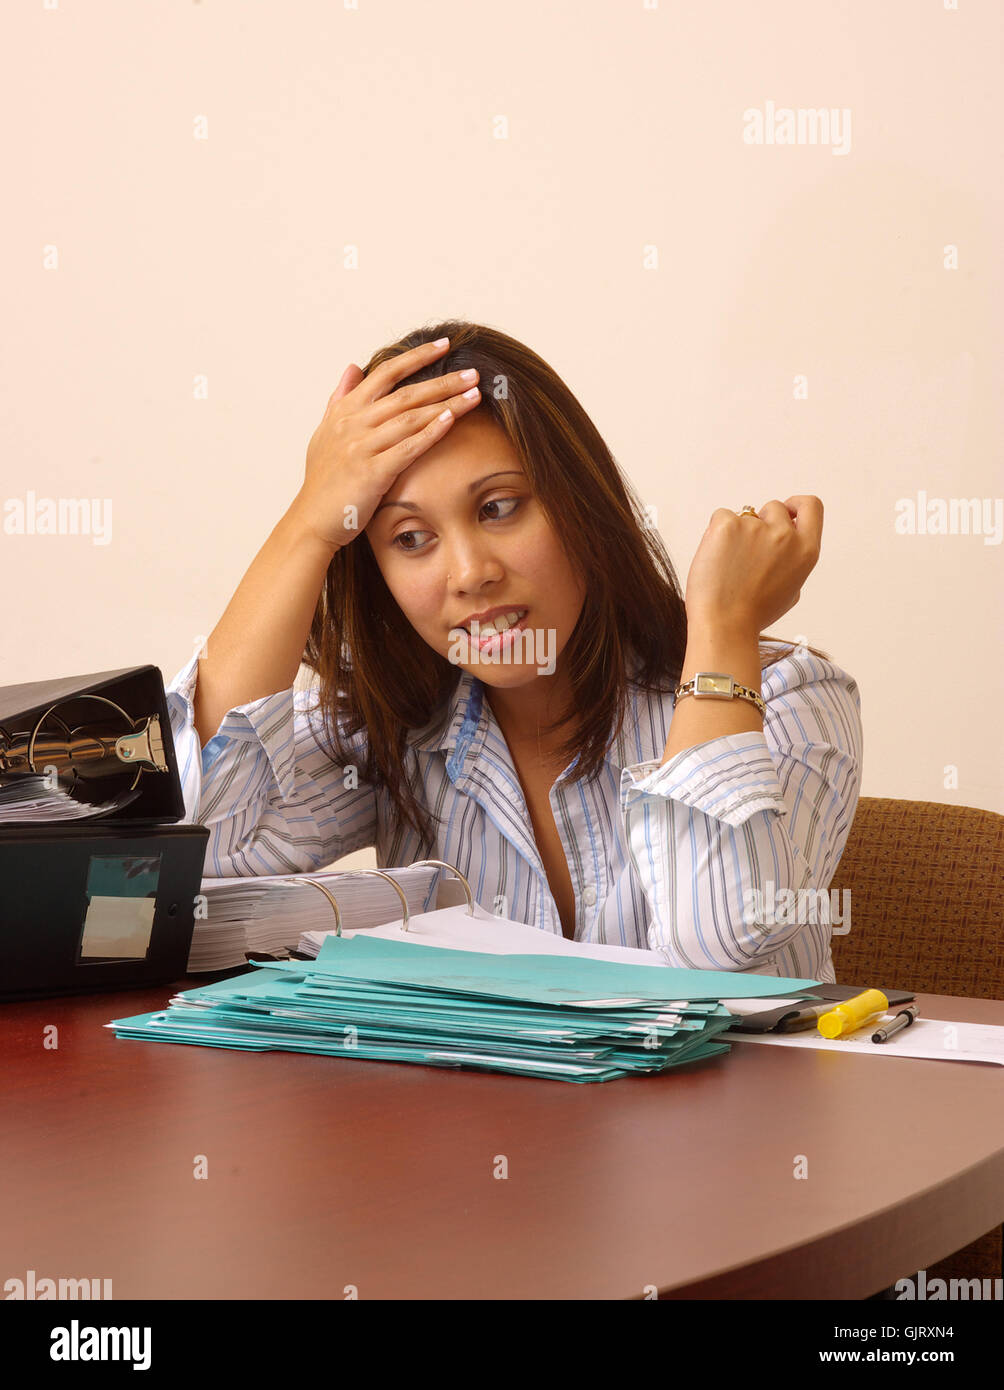 Frustrated businesswoman femme de carrière Banque D'Images